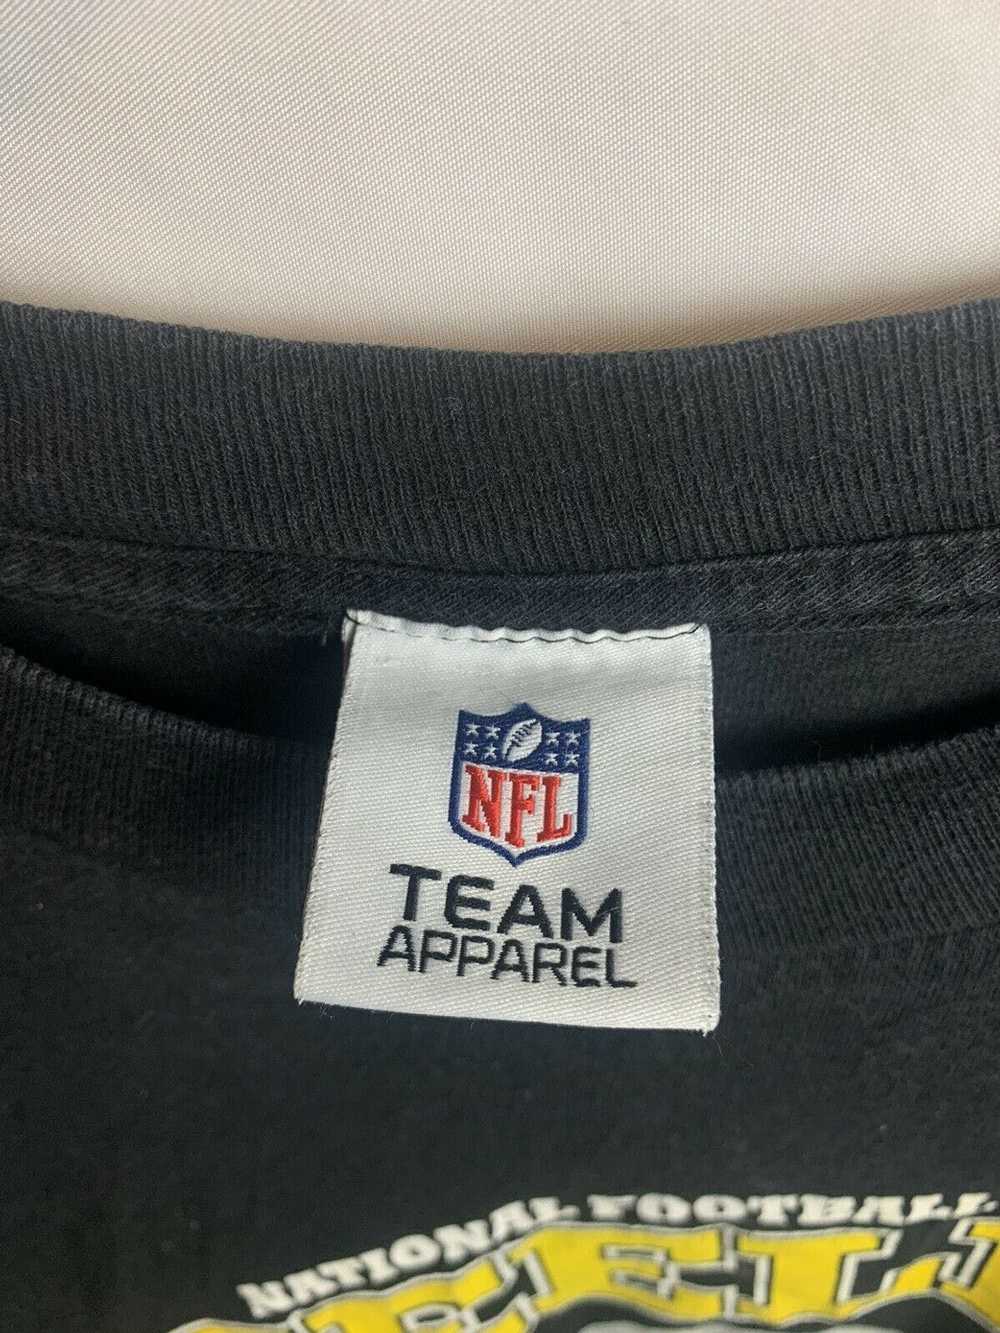 NFL Pittsburg NFL Team Apparel Men’s Black T-Shir… - image 4